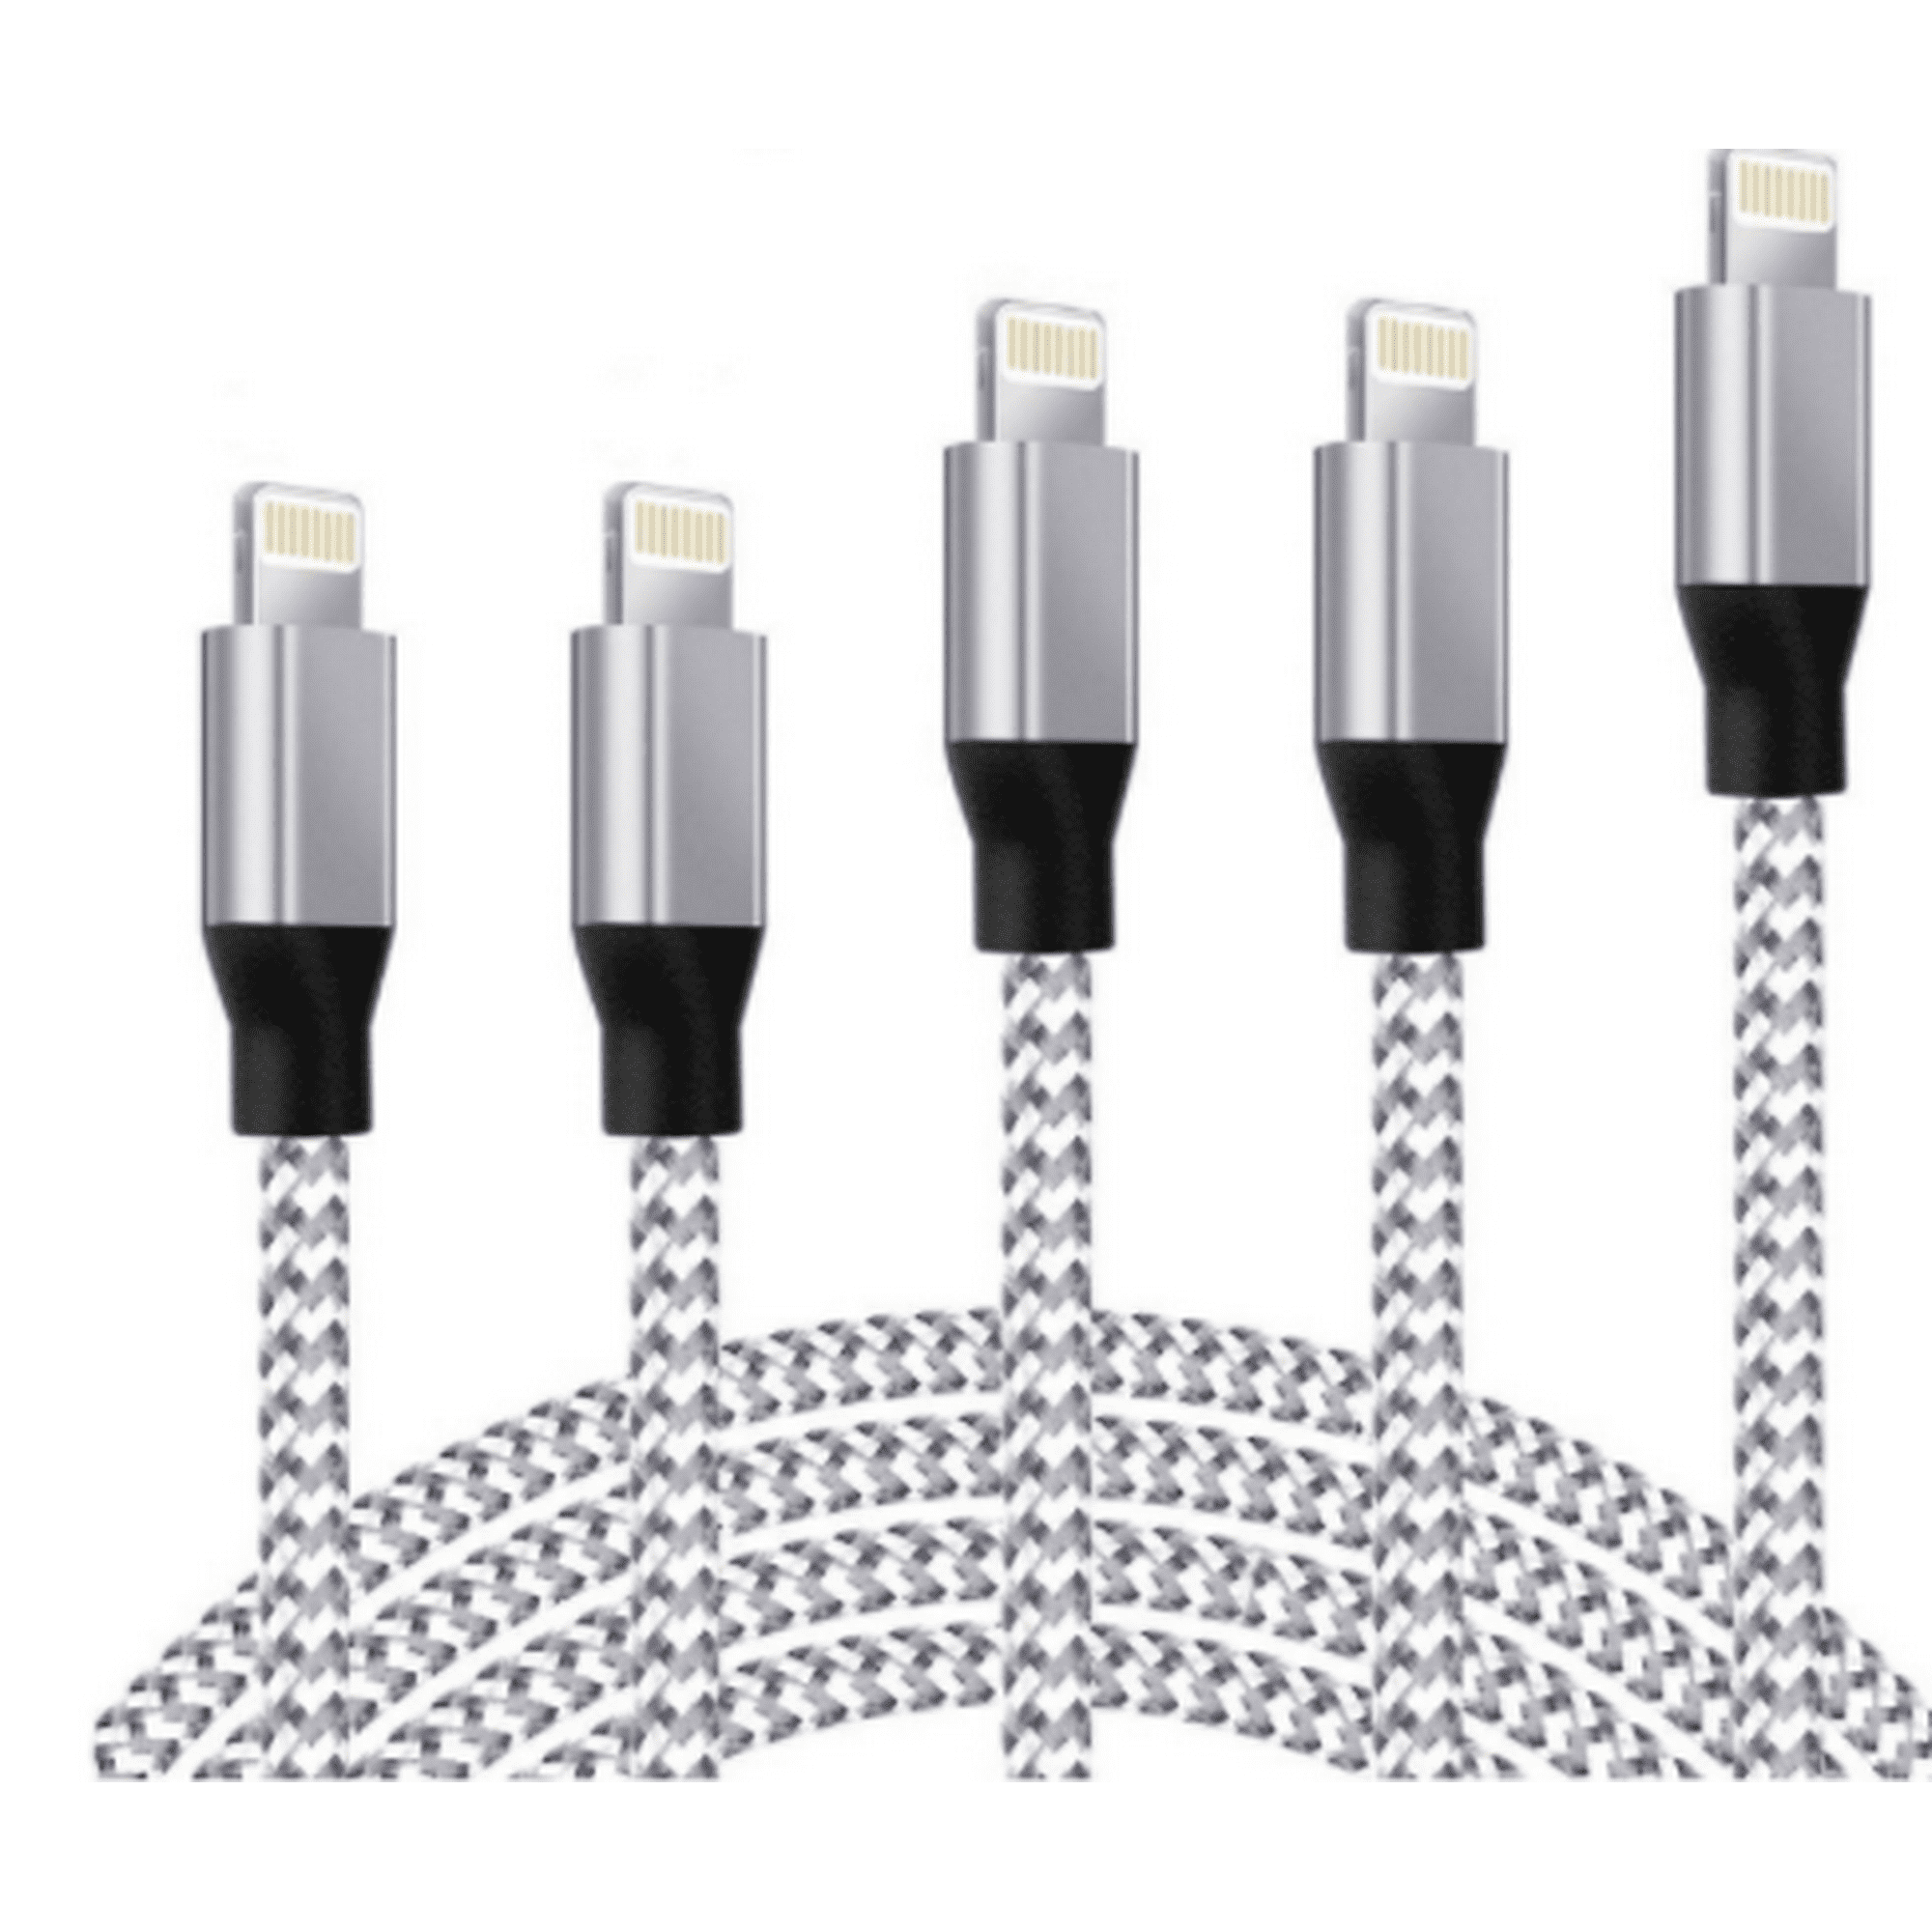 Cable de carga y cargador de Apple iPhone/iPad Lightning a USB [Apple MFi  certificado] para iPhone X/8/7/6s/6/plus/5s/5c/SE, iPad Pro/Air/Mini, iPod